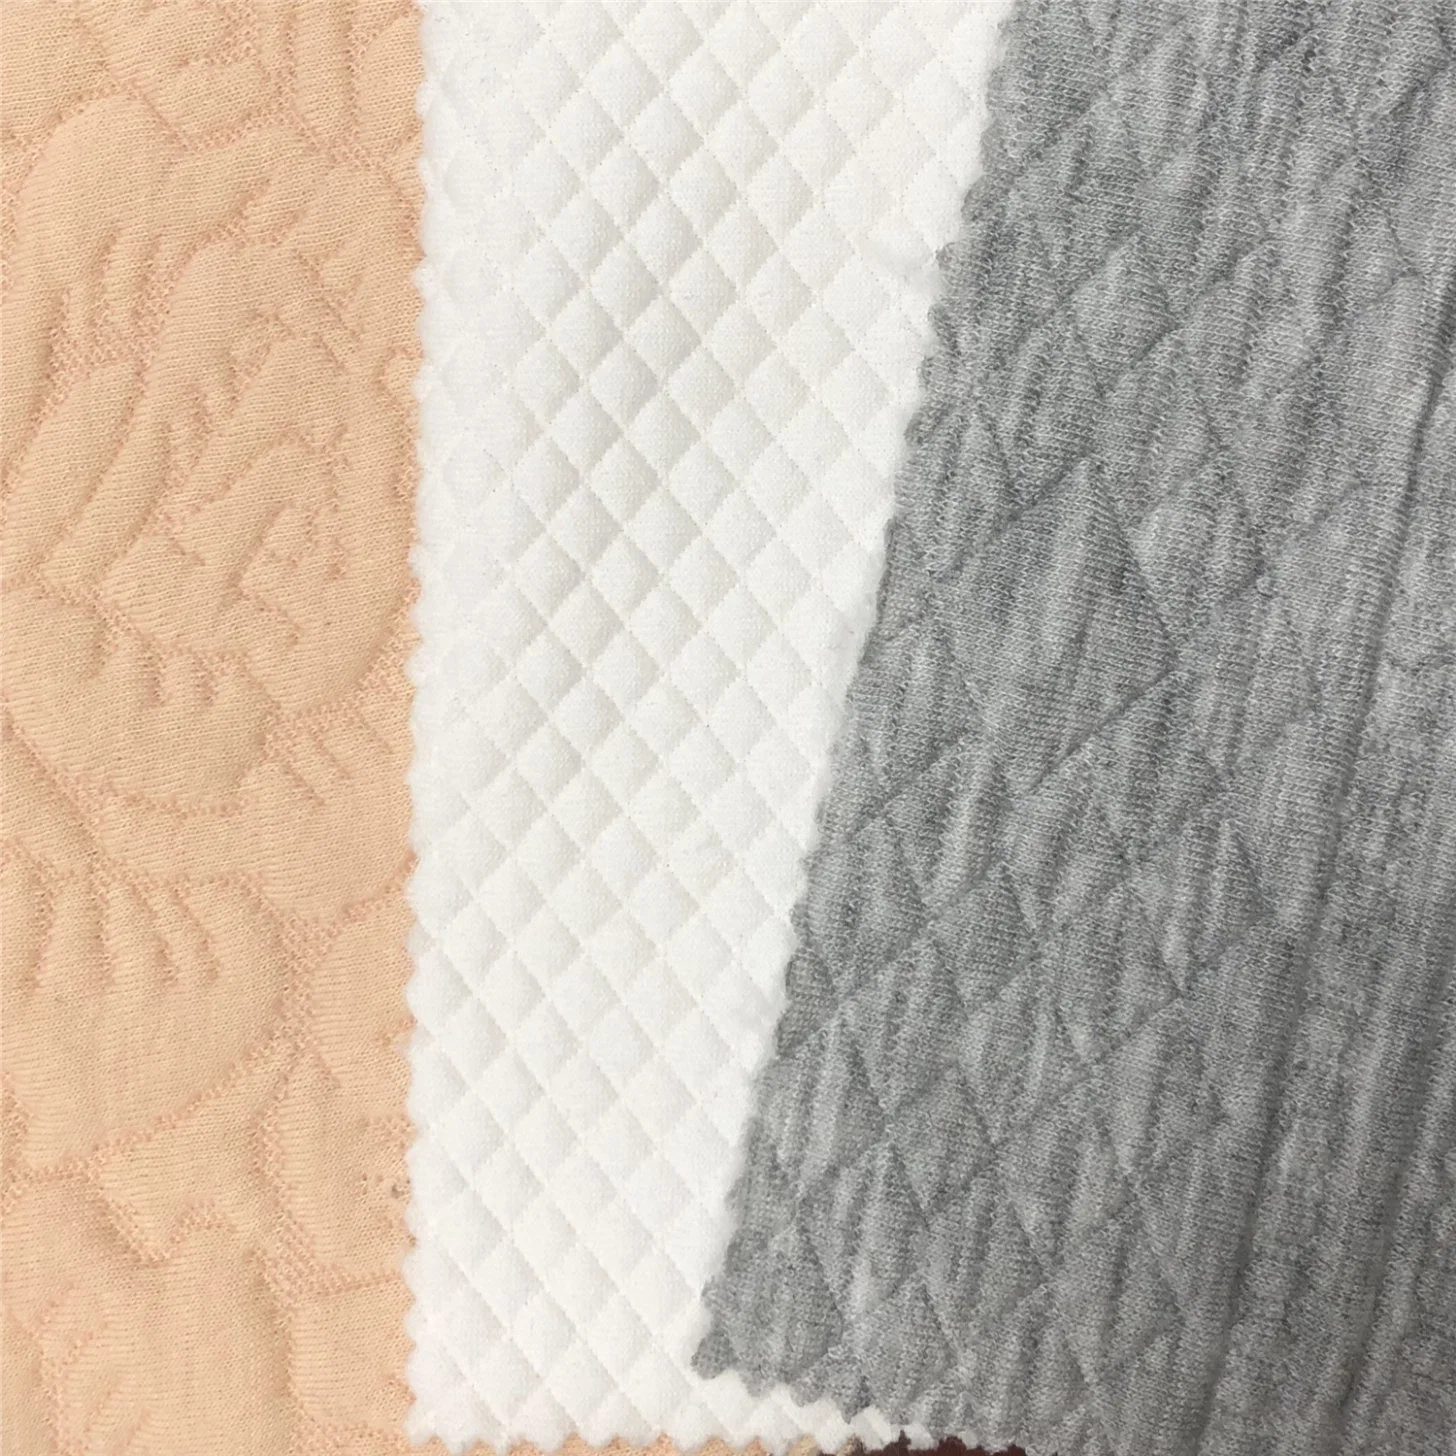 Matelas Air-Tier à tricotage jacquard Home textile polyester recyclé tissus de coton-Fgtex® -jardin de tissu écologique avec 20 ans de culture profonde